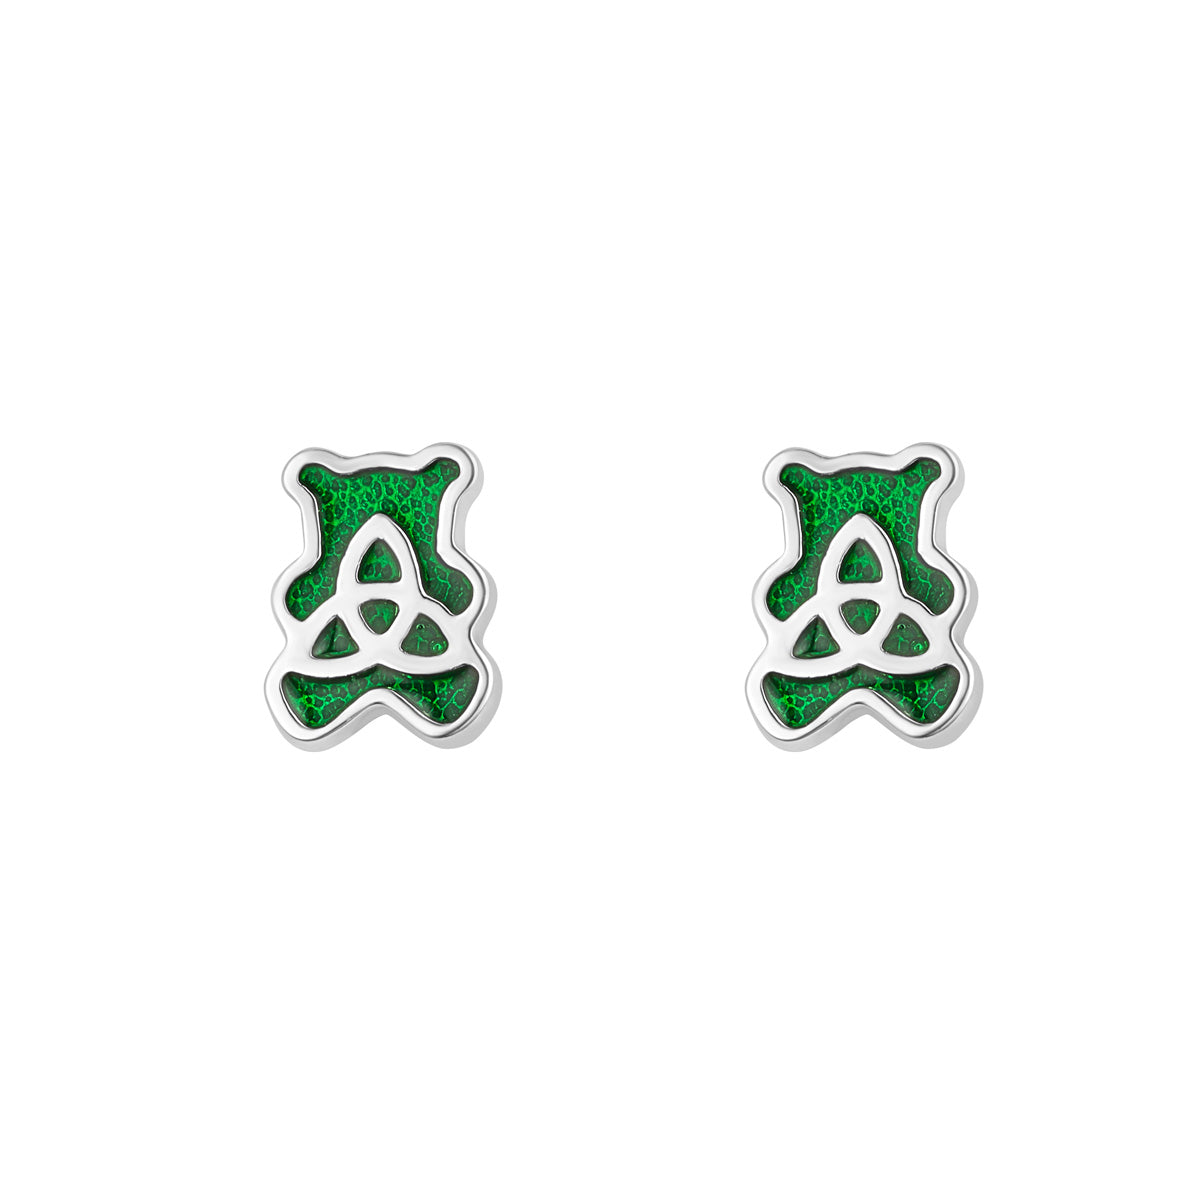 Stock image of Solvar trinity teddy bear earrings in silver s34221